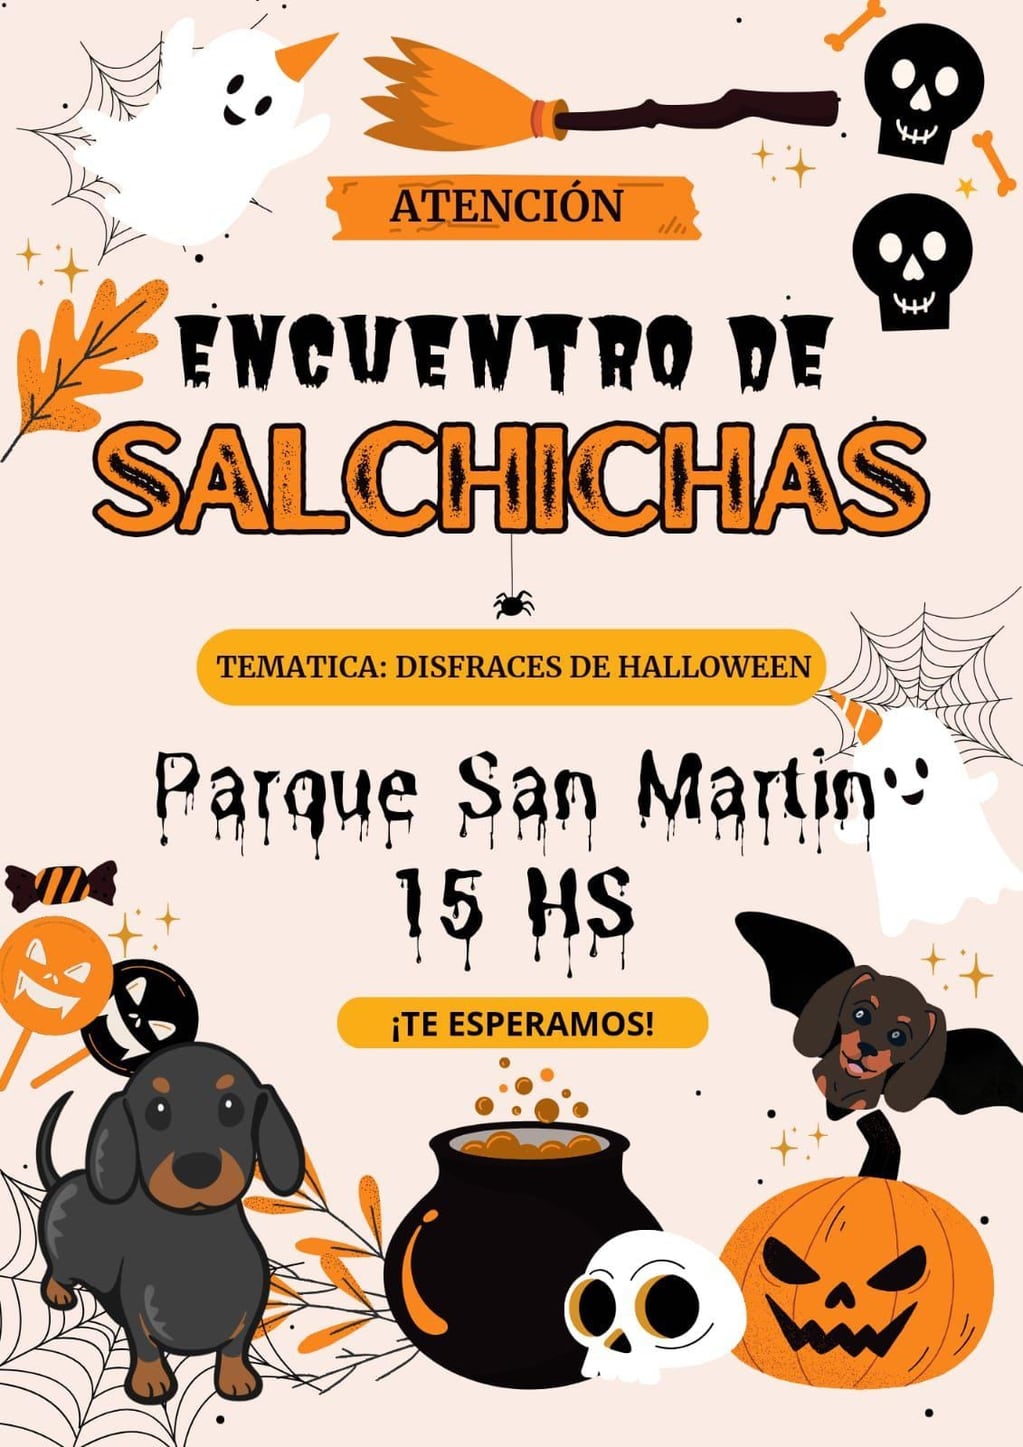 Este domingo se realiza un encuentro de "Perros Salchichas" en Jujuy, que culmina con la coronación del rey y la reina "salchicha".